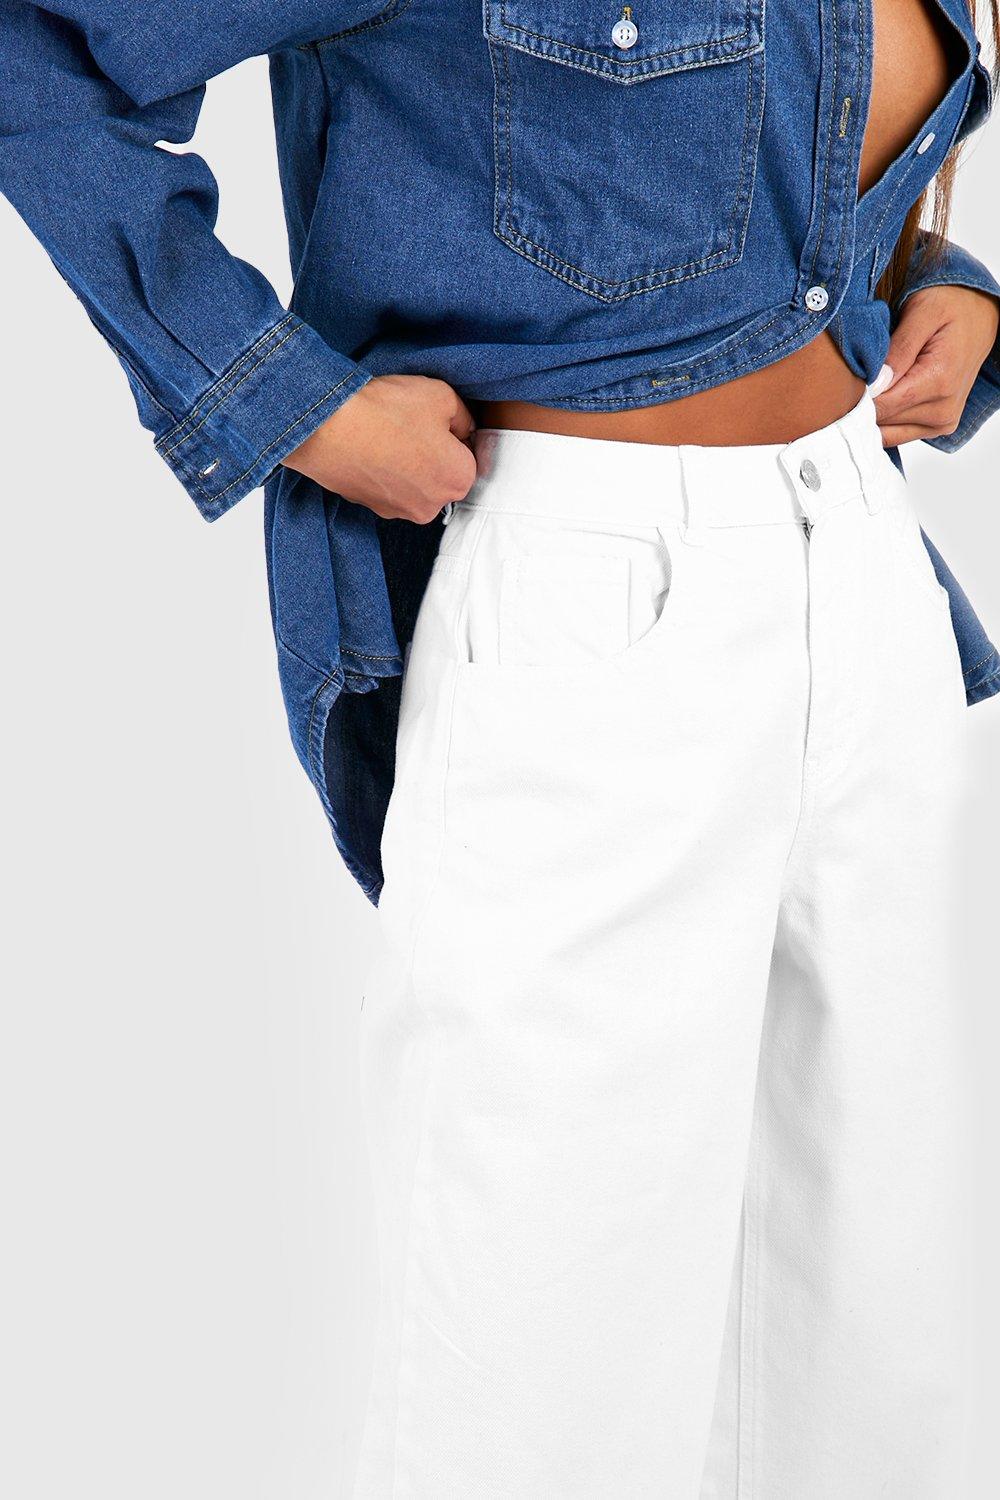 boohoo Plus Raw Hem Flared Denim Jeans - Blue - Size 22